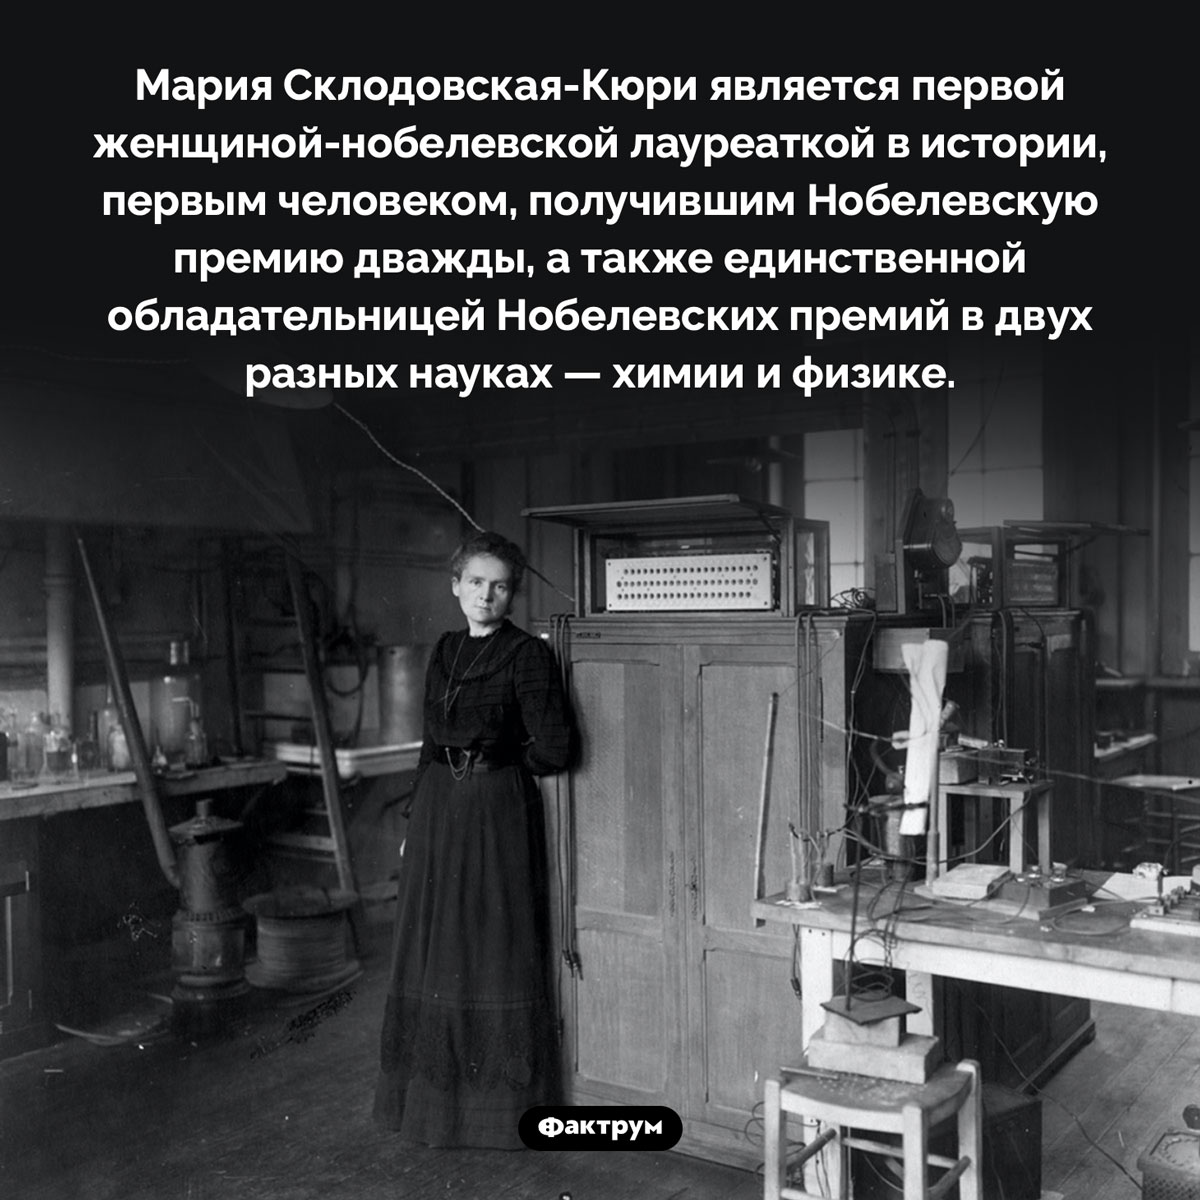 Удивительная Мария Склодовская-Кюри. Мария Склодовская-Кюри является первой женщиной-нобелевской лауреаткой в истории, первым человеком, получившим Нобелевскую премию дважды, а также единственной обладательницей Нобелевских премий в двух разных науках — химии и физике.